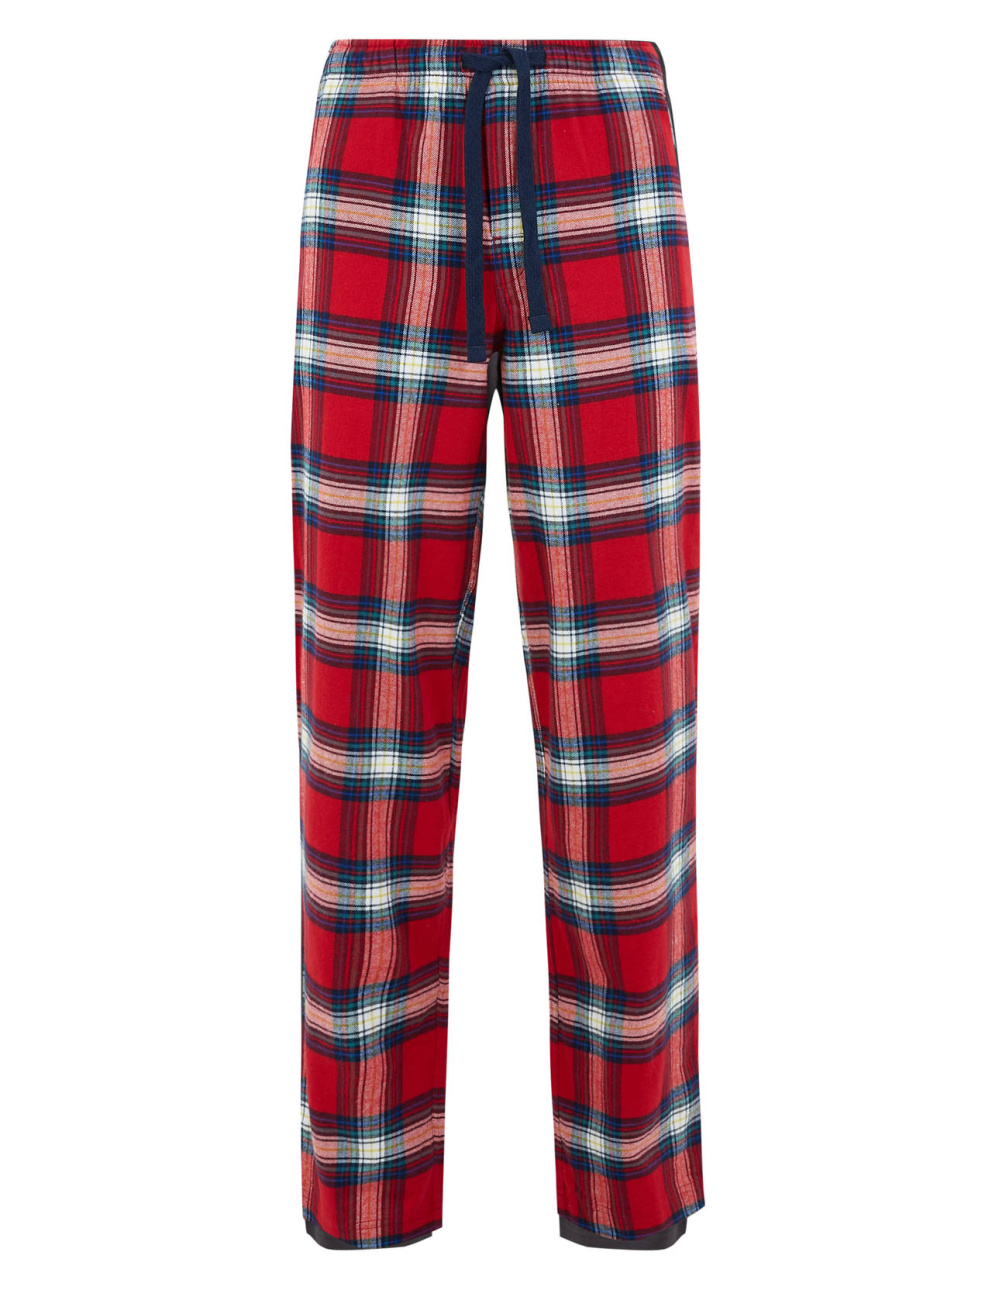 Pánské pyžamové kalhoty, Marks &amp; Spencer, 699 Kč
